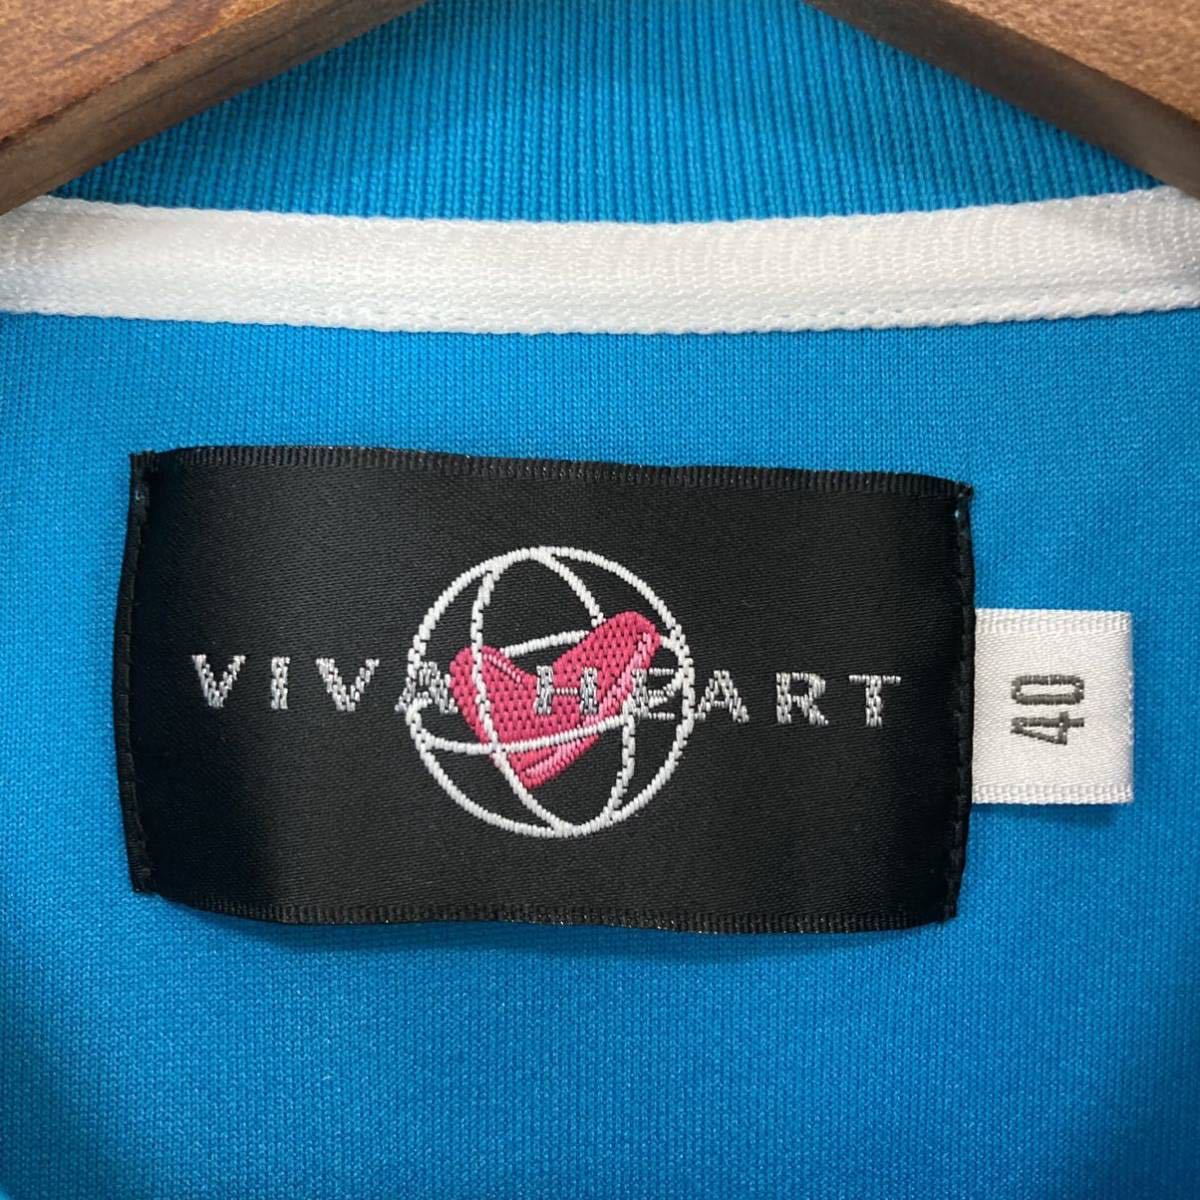 VIVA HEART ビバハート 吸水速乾 レディース 半袖 ポロシャツ トップス 胸元刺繍 無地 ブルー 青色 40 Mサイズ相当 golf ゴルフ スポーツ